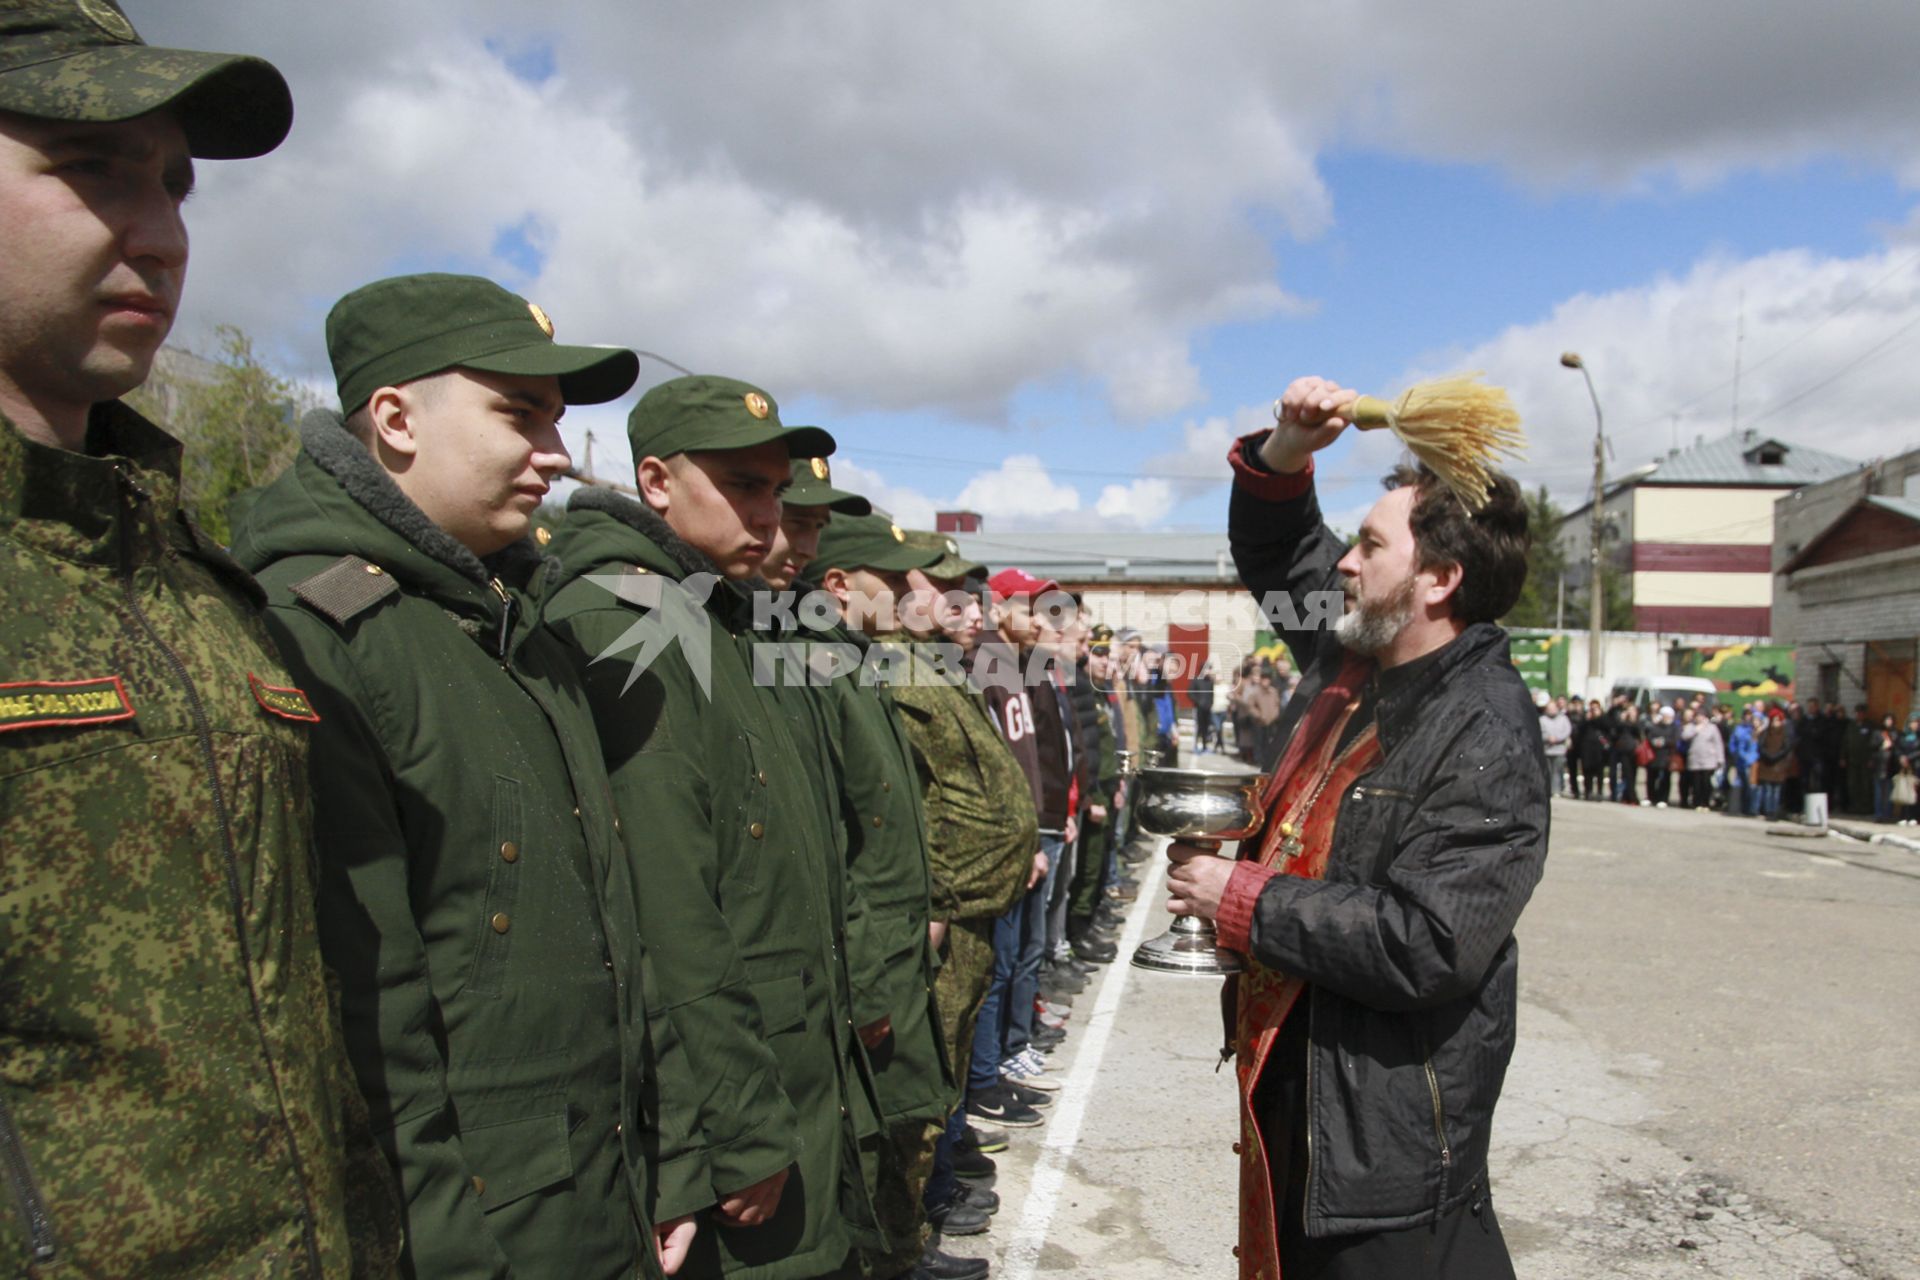 Барнаул.  Священник благословляет будущих солдат на благополучную службу.